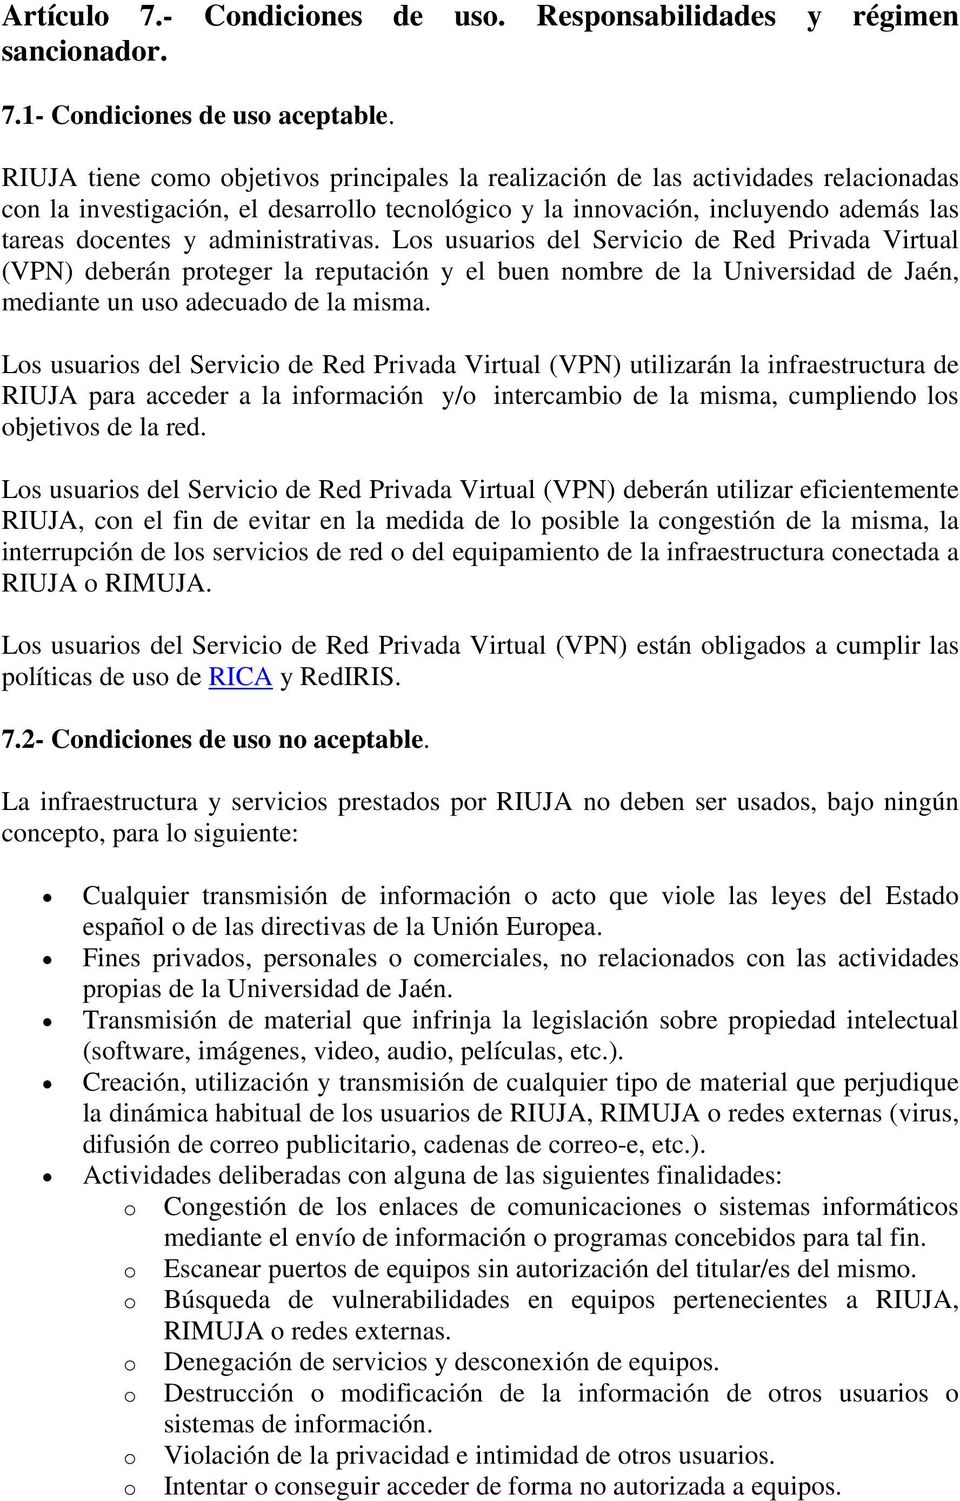 administrativas. Los usuarios del Servicio de Red Privada Virtual (VPN) deberán proteger la reputación y el buen nombre de la Universidad de Jaén, mediante un uso adecuado de la misma.